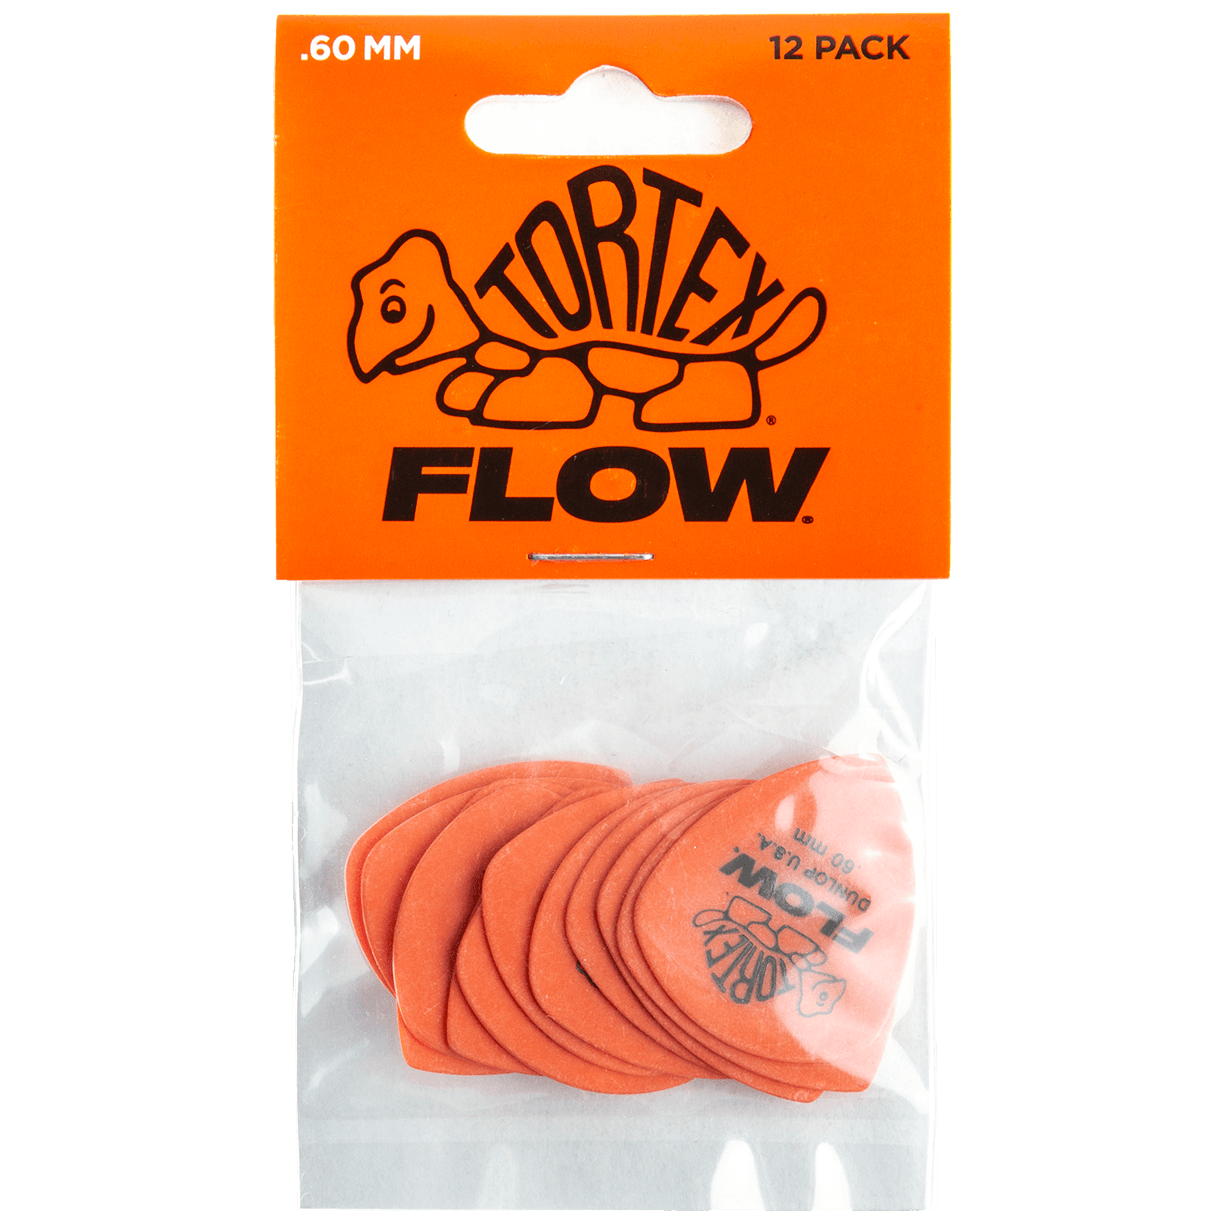 Dunlop Tortex Flow Std. Picks 0,60 Player's Pack 12 Stück